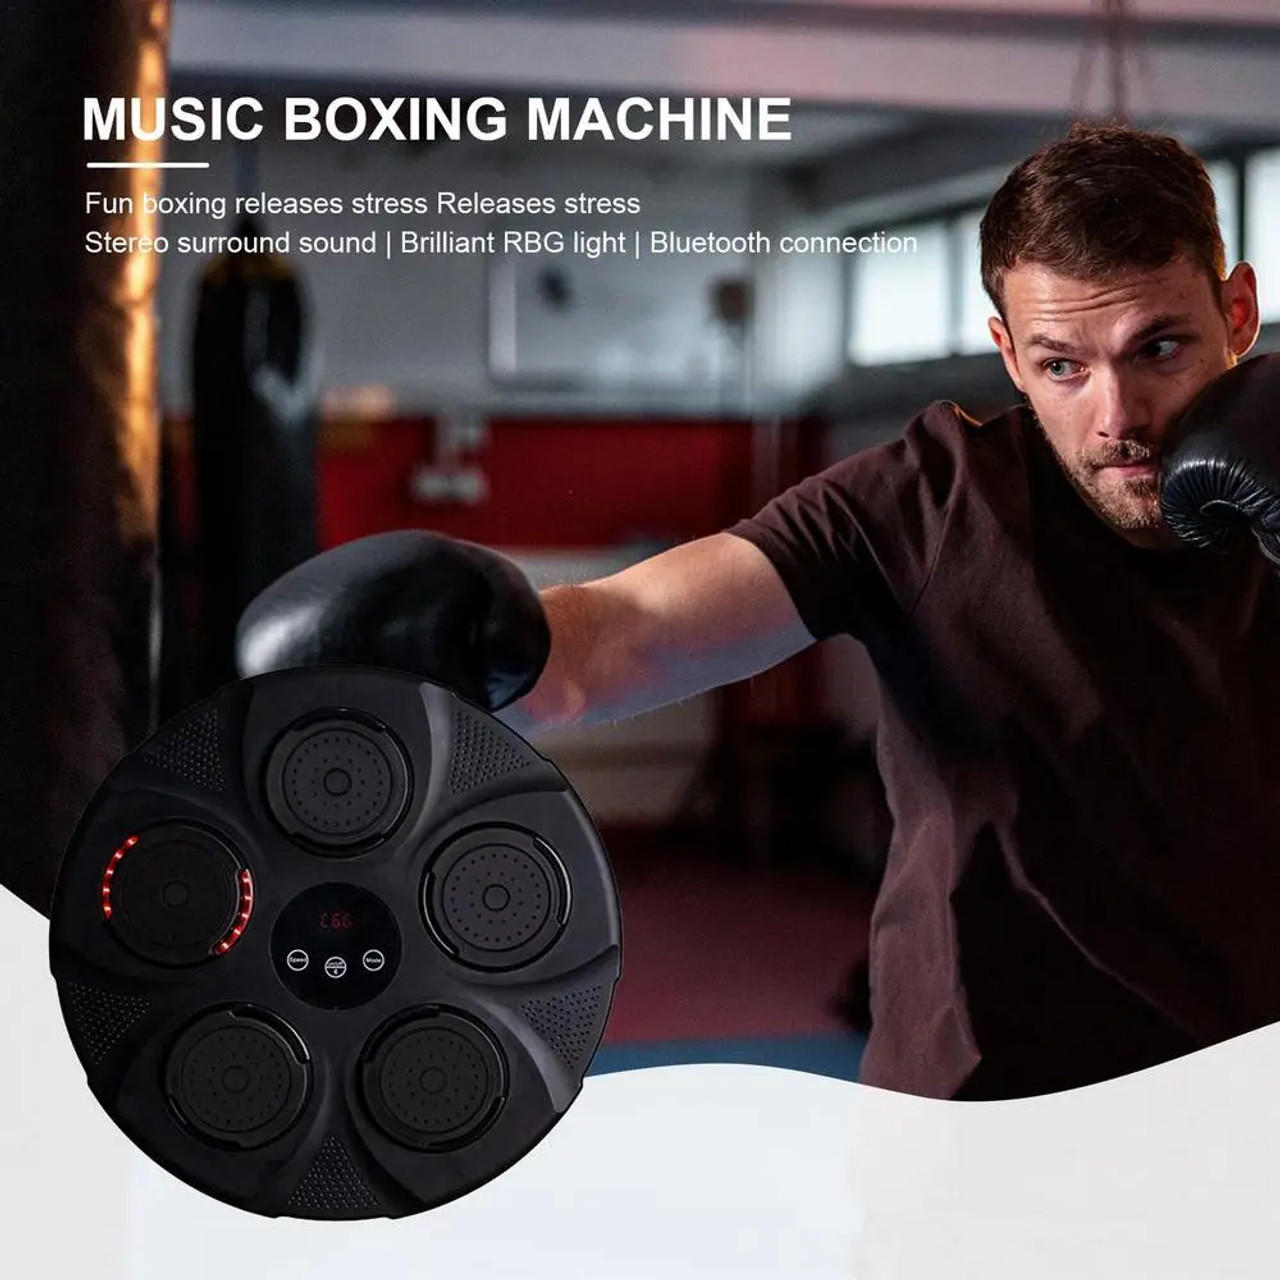 Music Boxing Machine